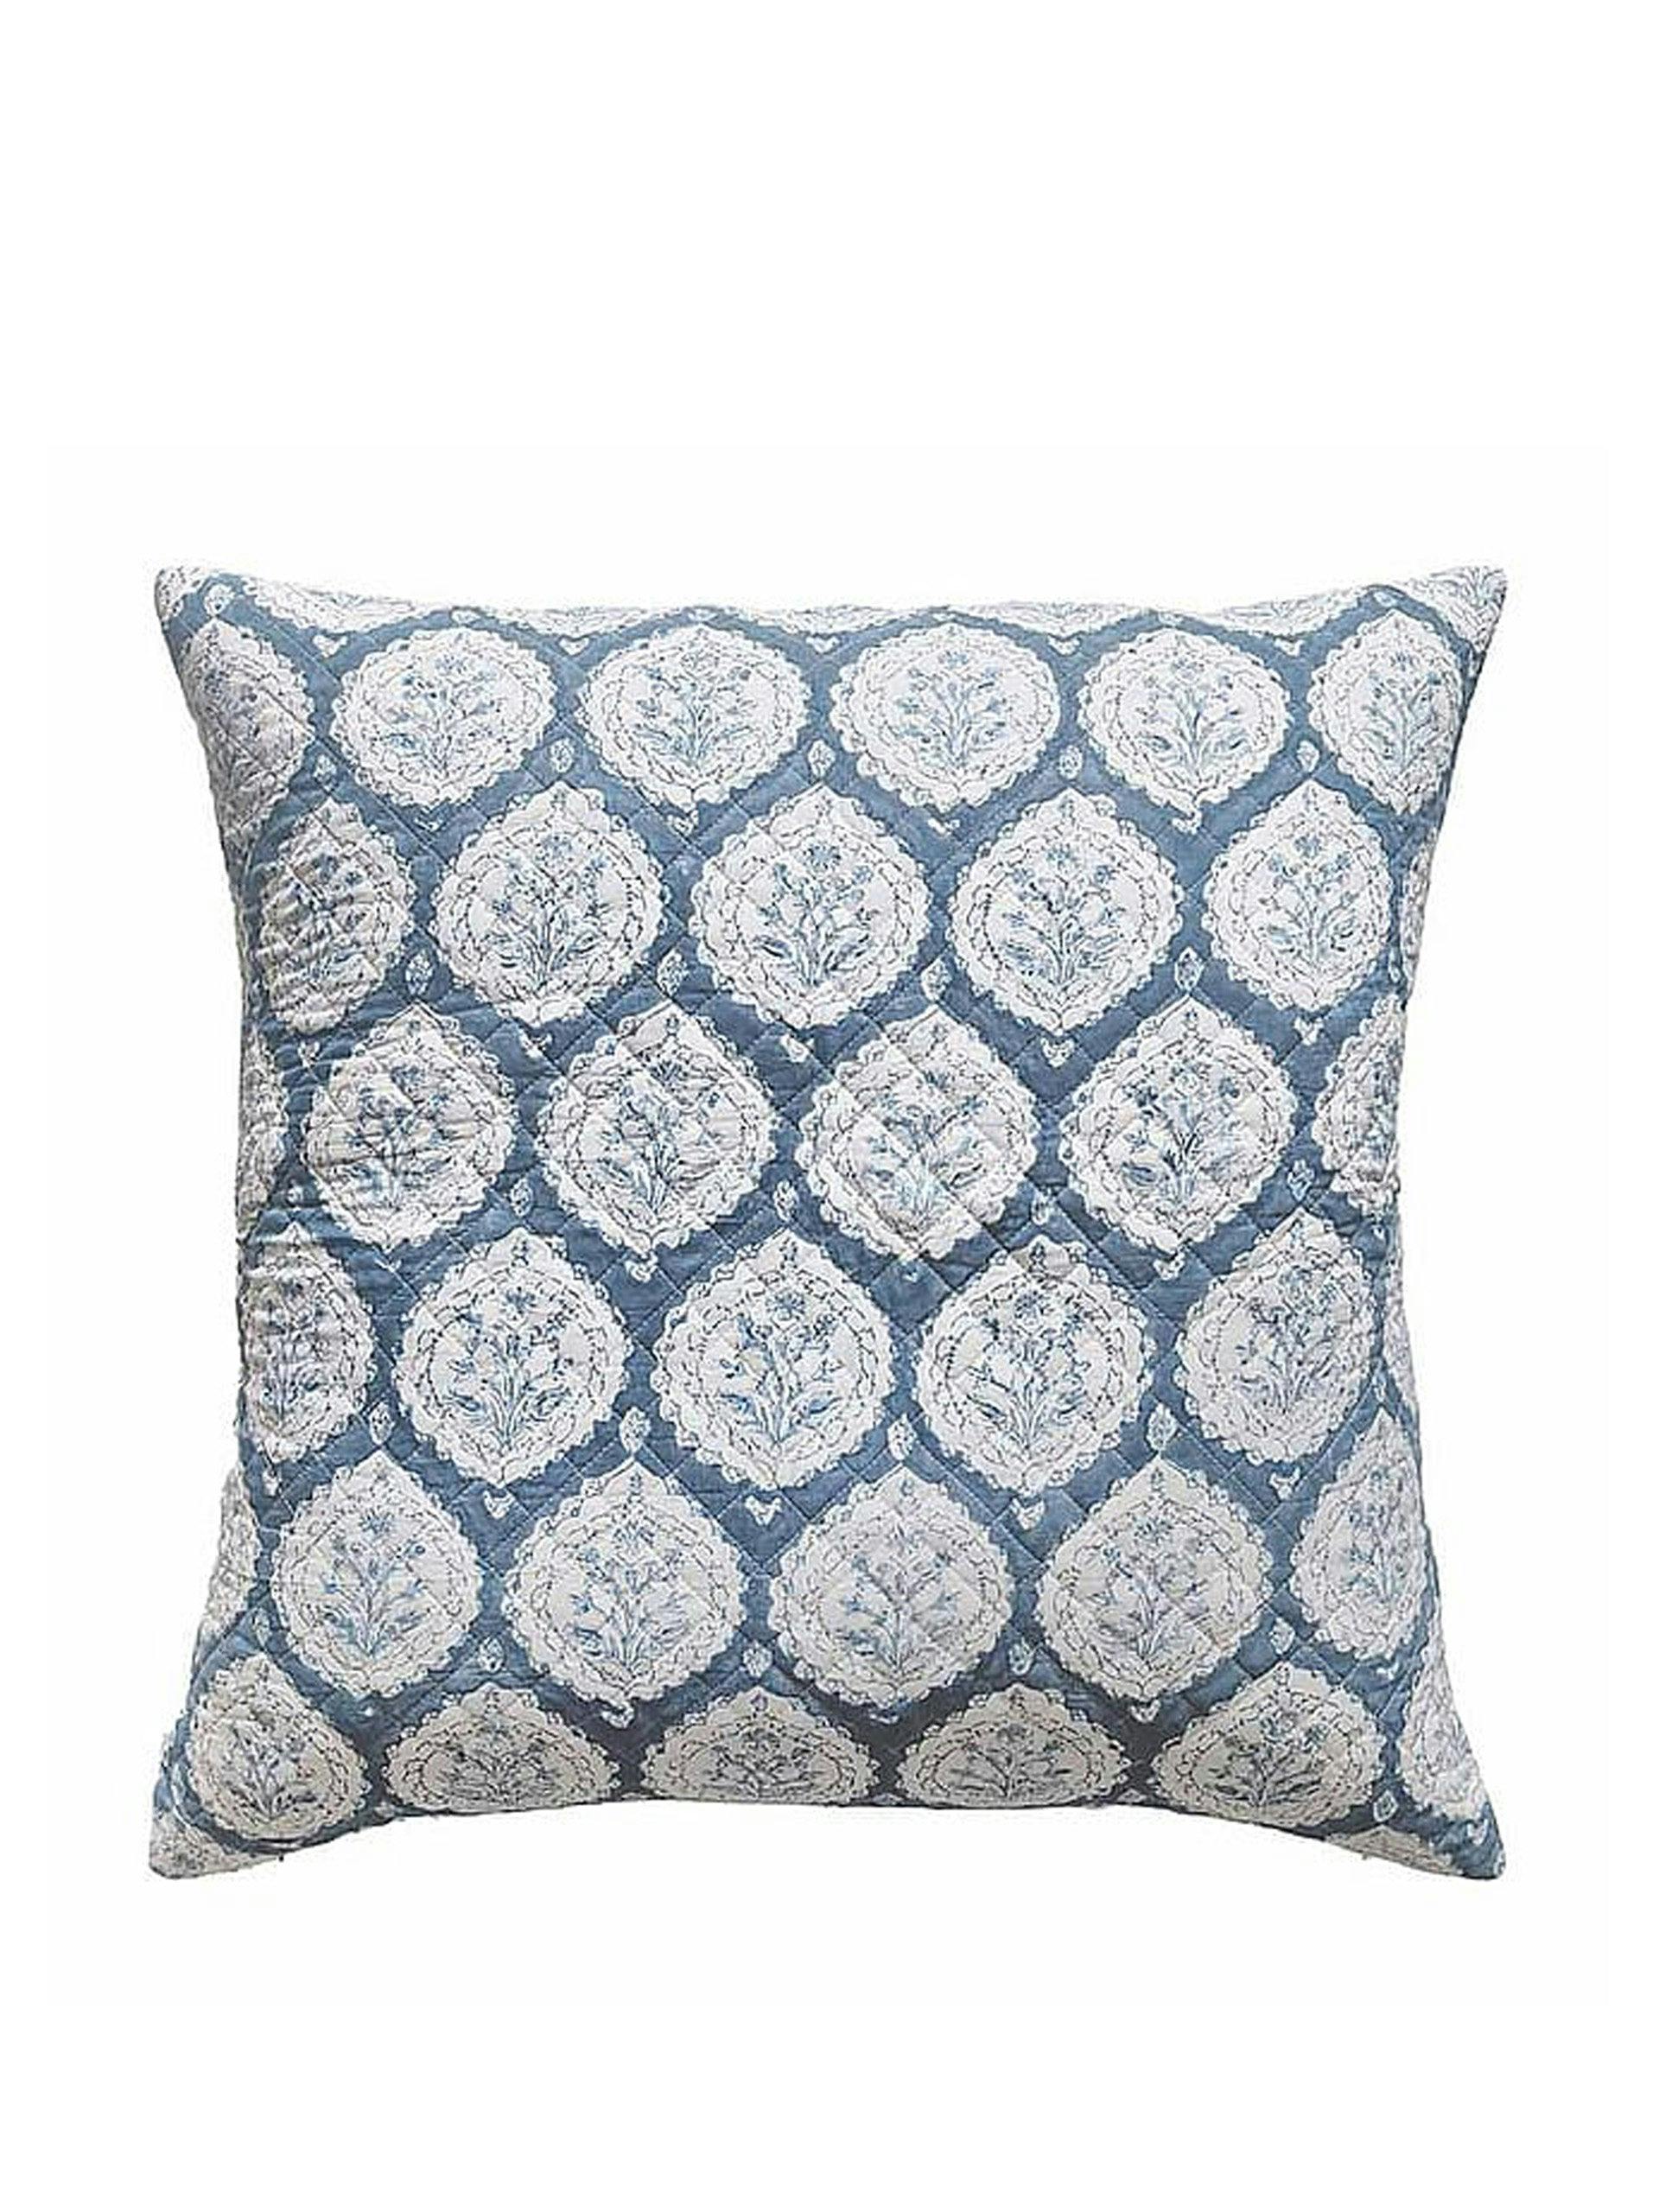 Blue block printed cushion